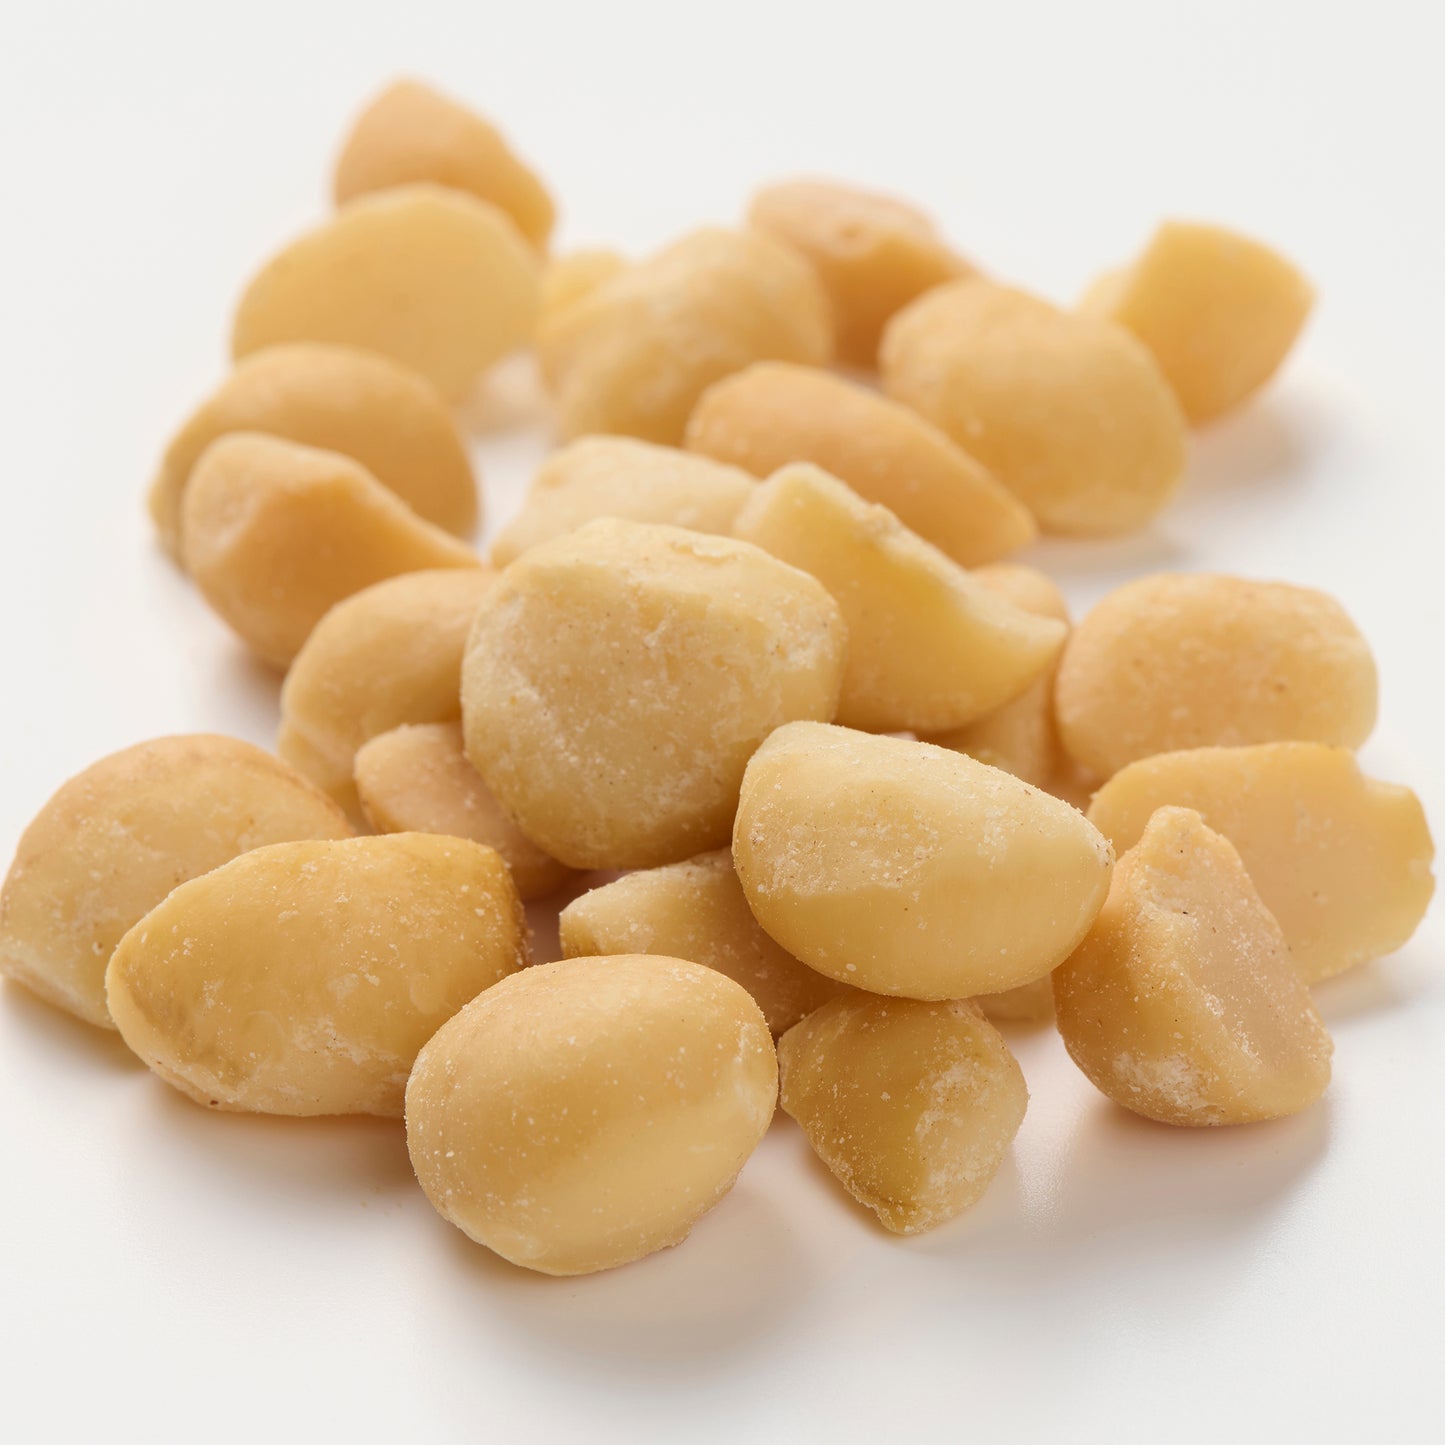 【オープンSALE15%OFF】THE HILLS Macadamia Nuts Dry Roast, Salted (5set)